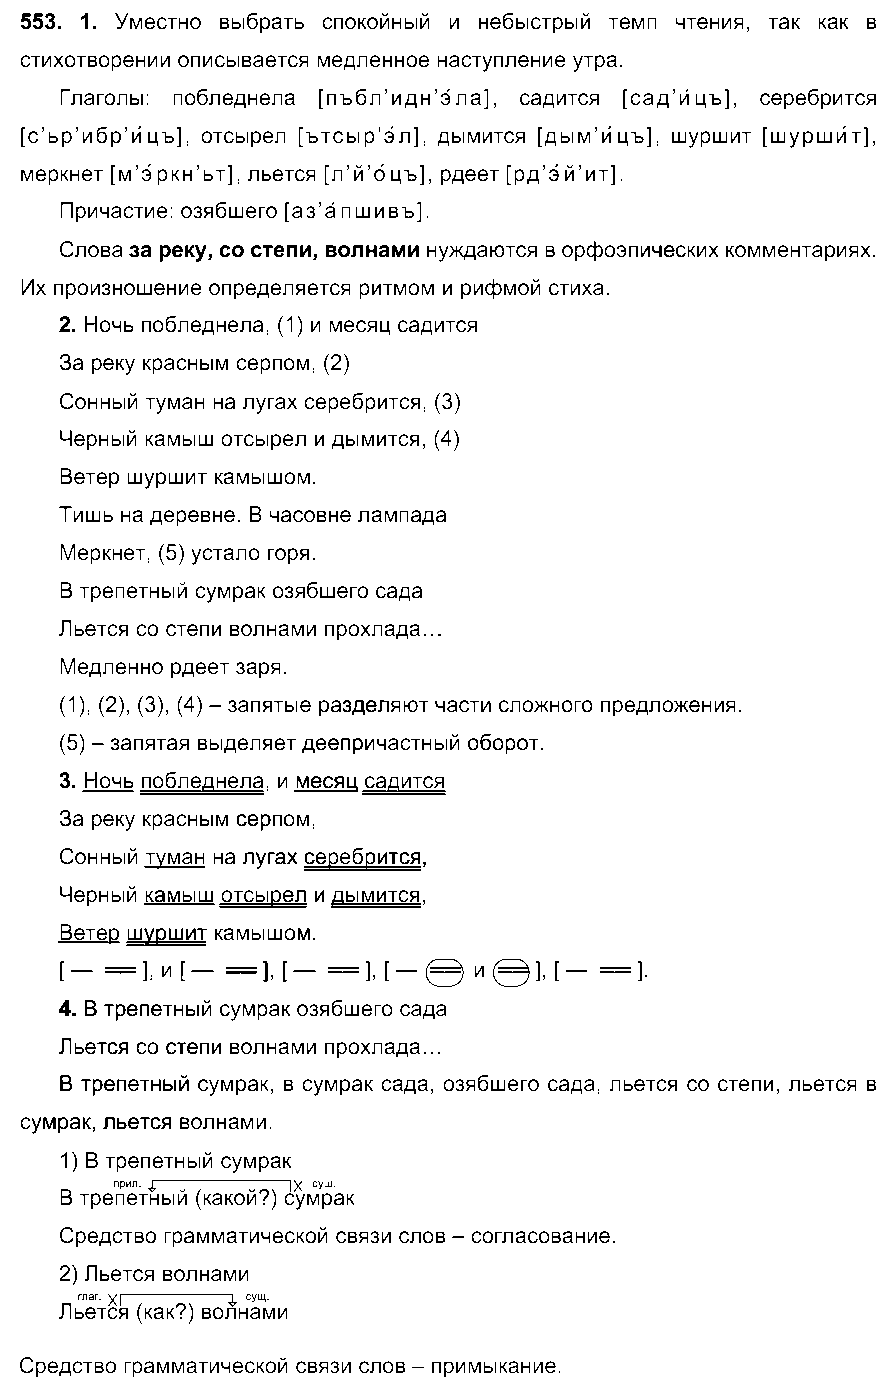 ГДЗ Русский язык 6 класс - 553